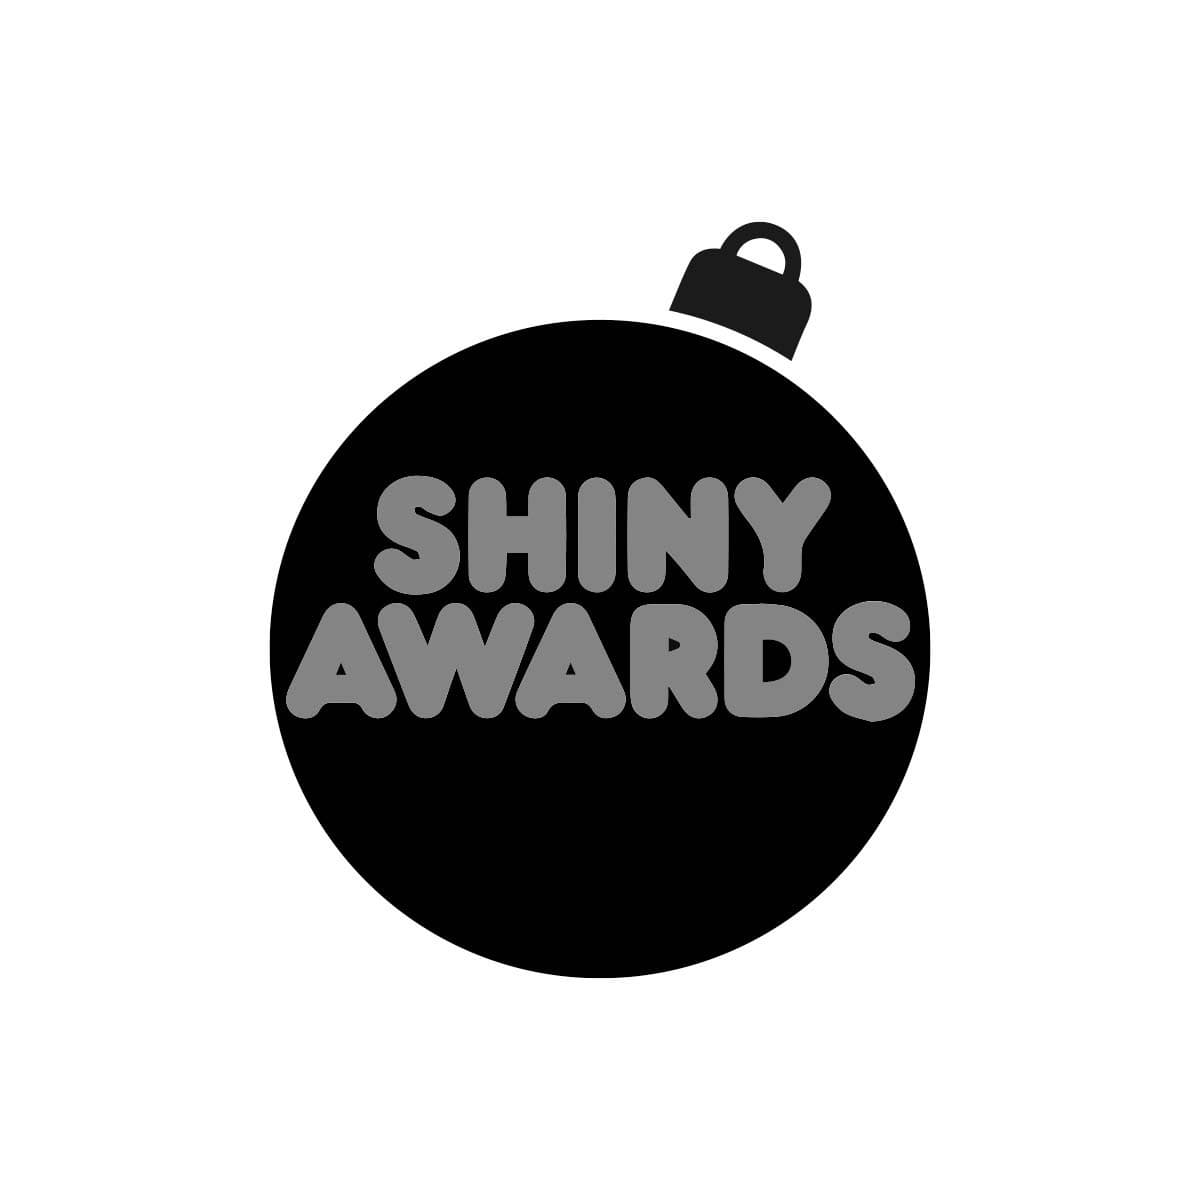 Shiny Awards logo